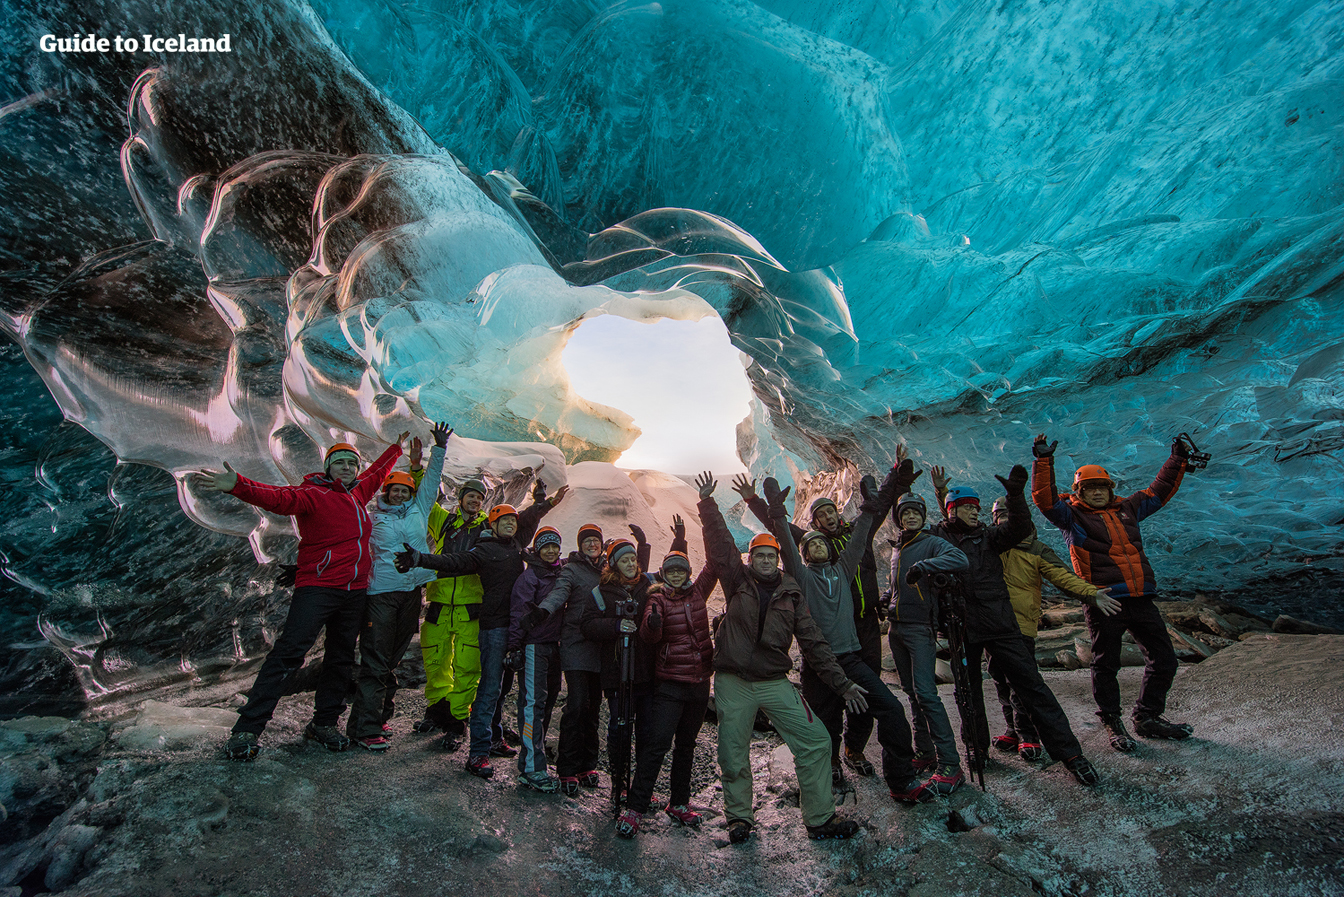 ทุกที่ที่คุณมองเข้าไปในถ้ำน้ำแข็ง มั่นใจได้ว่าคุณจะรู้สึกทึ่งและความประทับใจในแสงสีฟ้า.